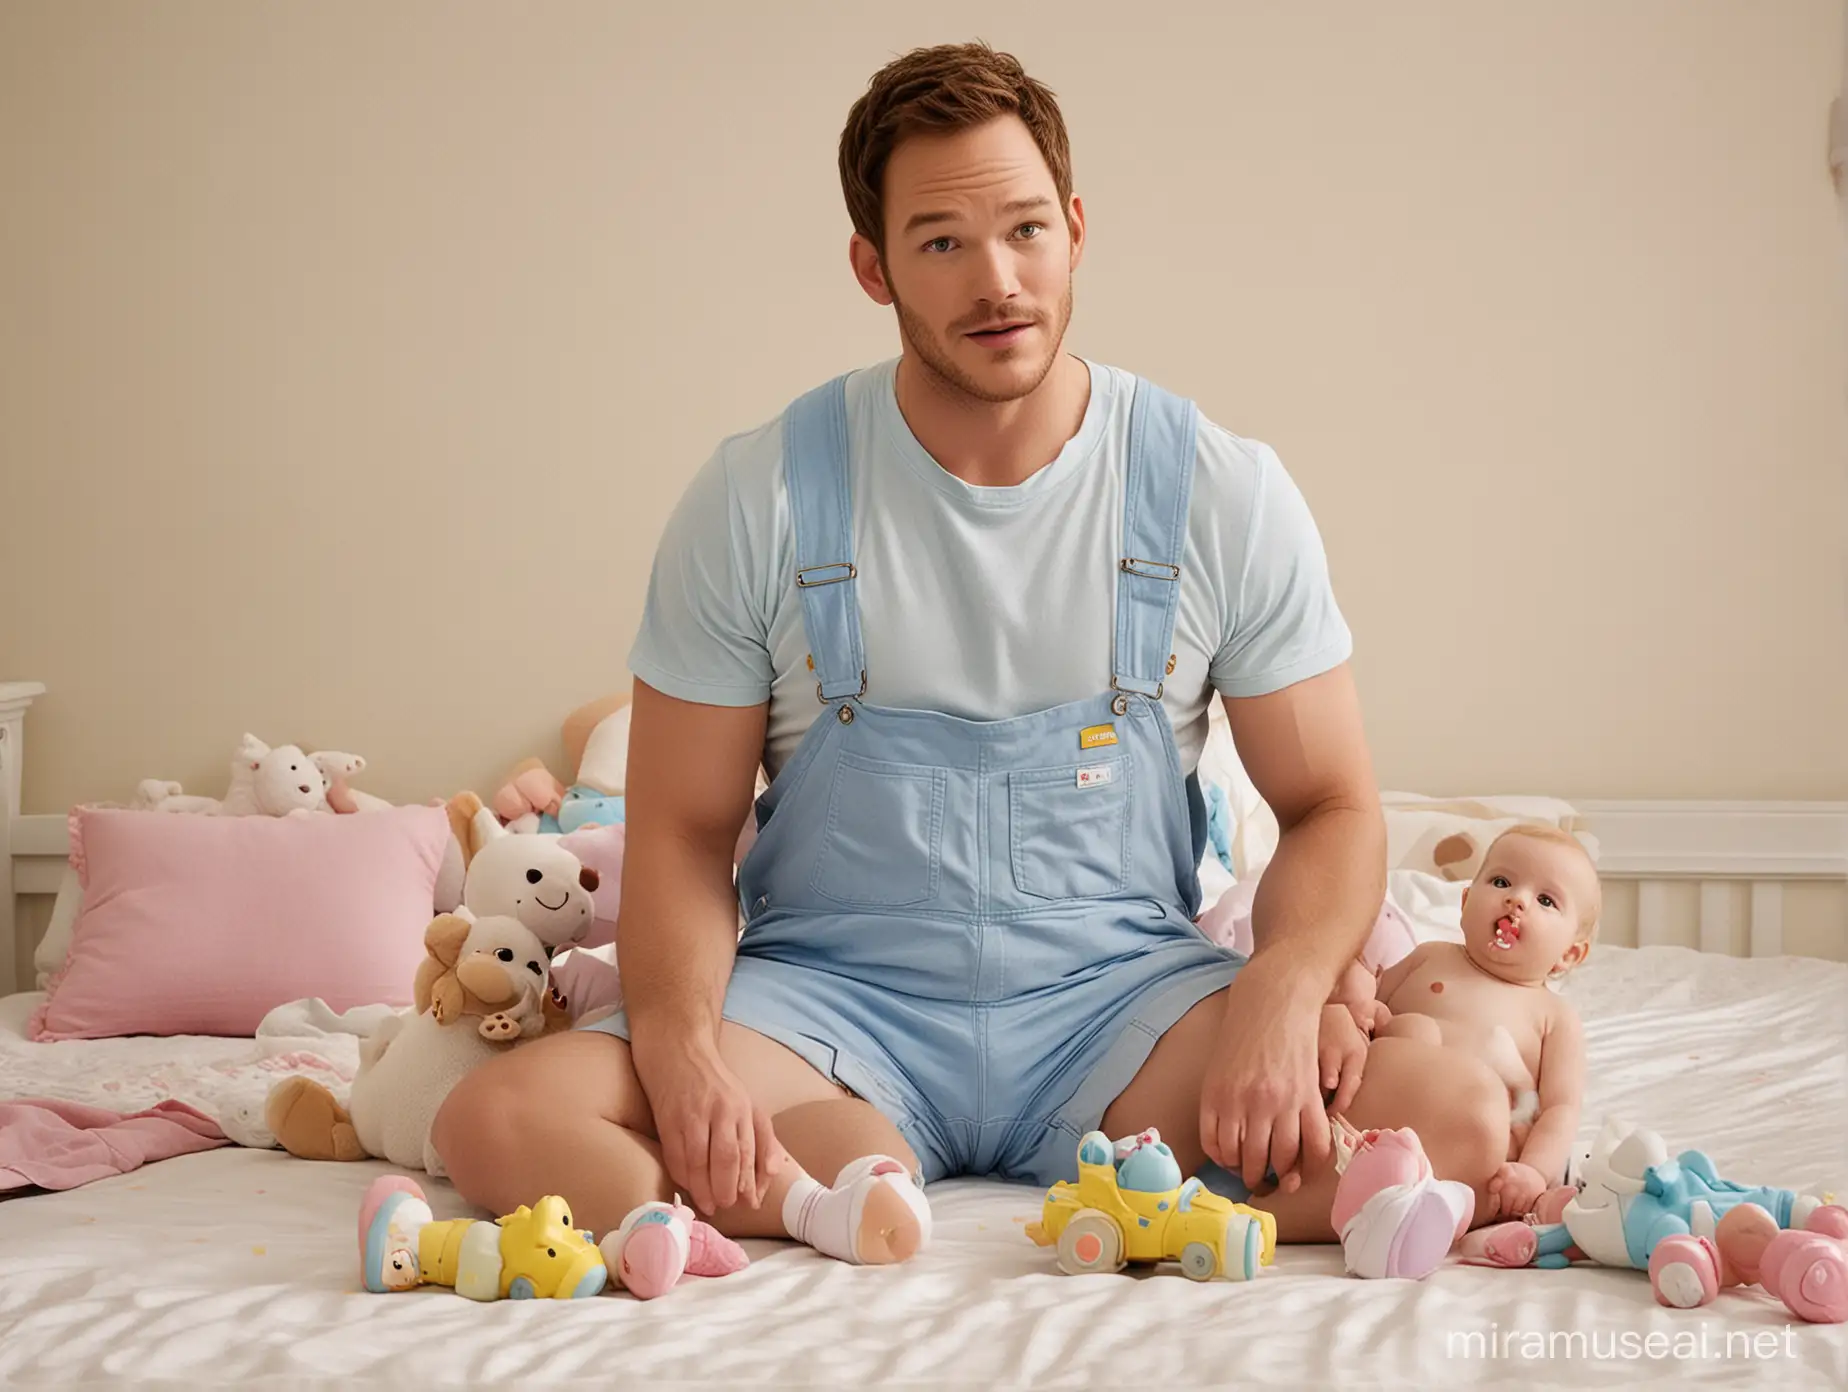 Chris Pratt as Adult Baby Playing in Giant Nursery